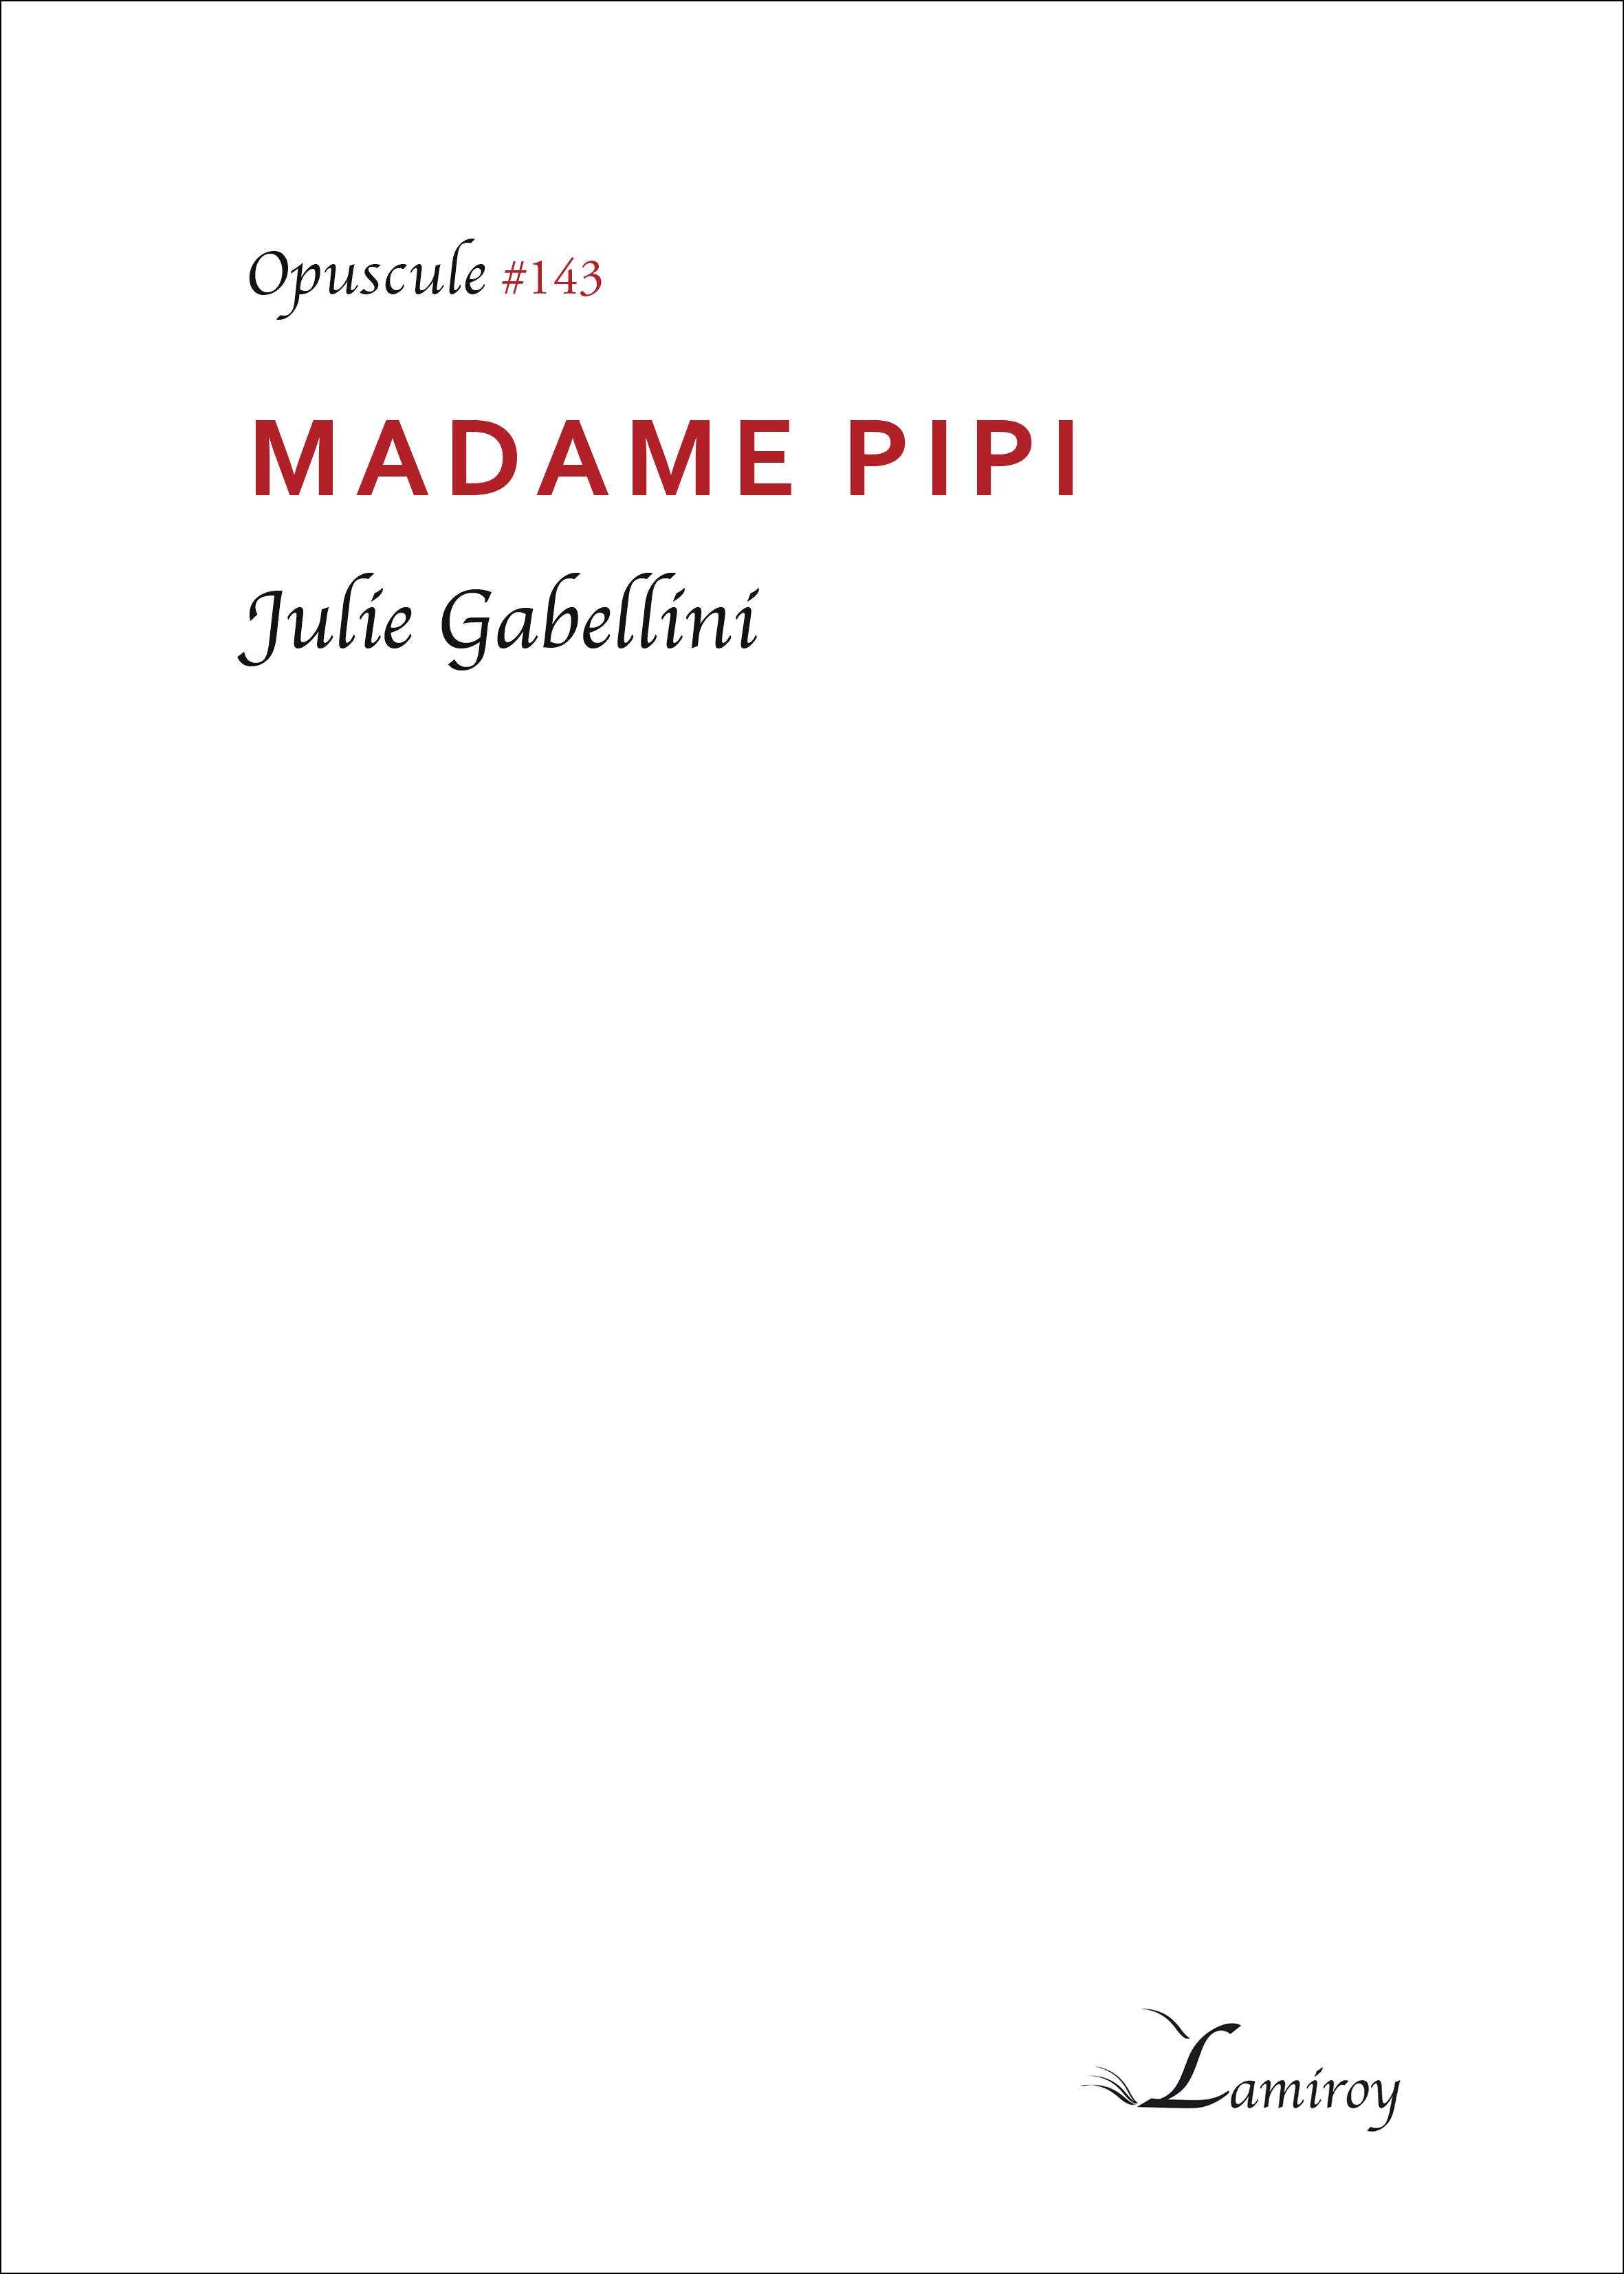 Madame Pipi #143